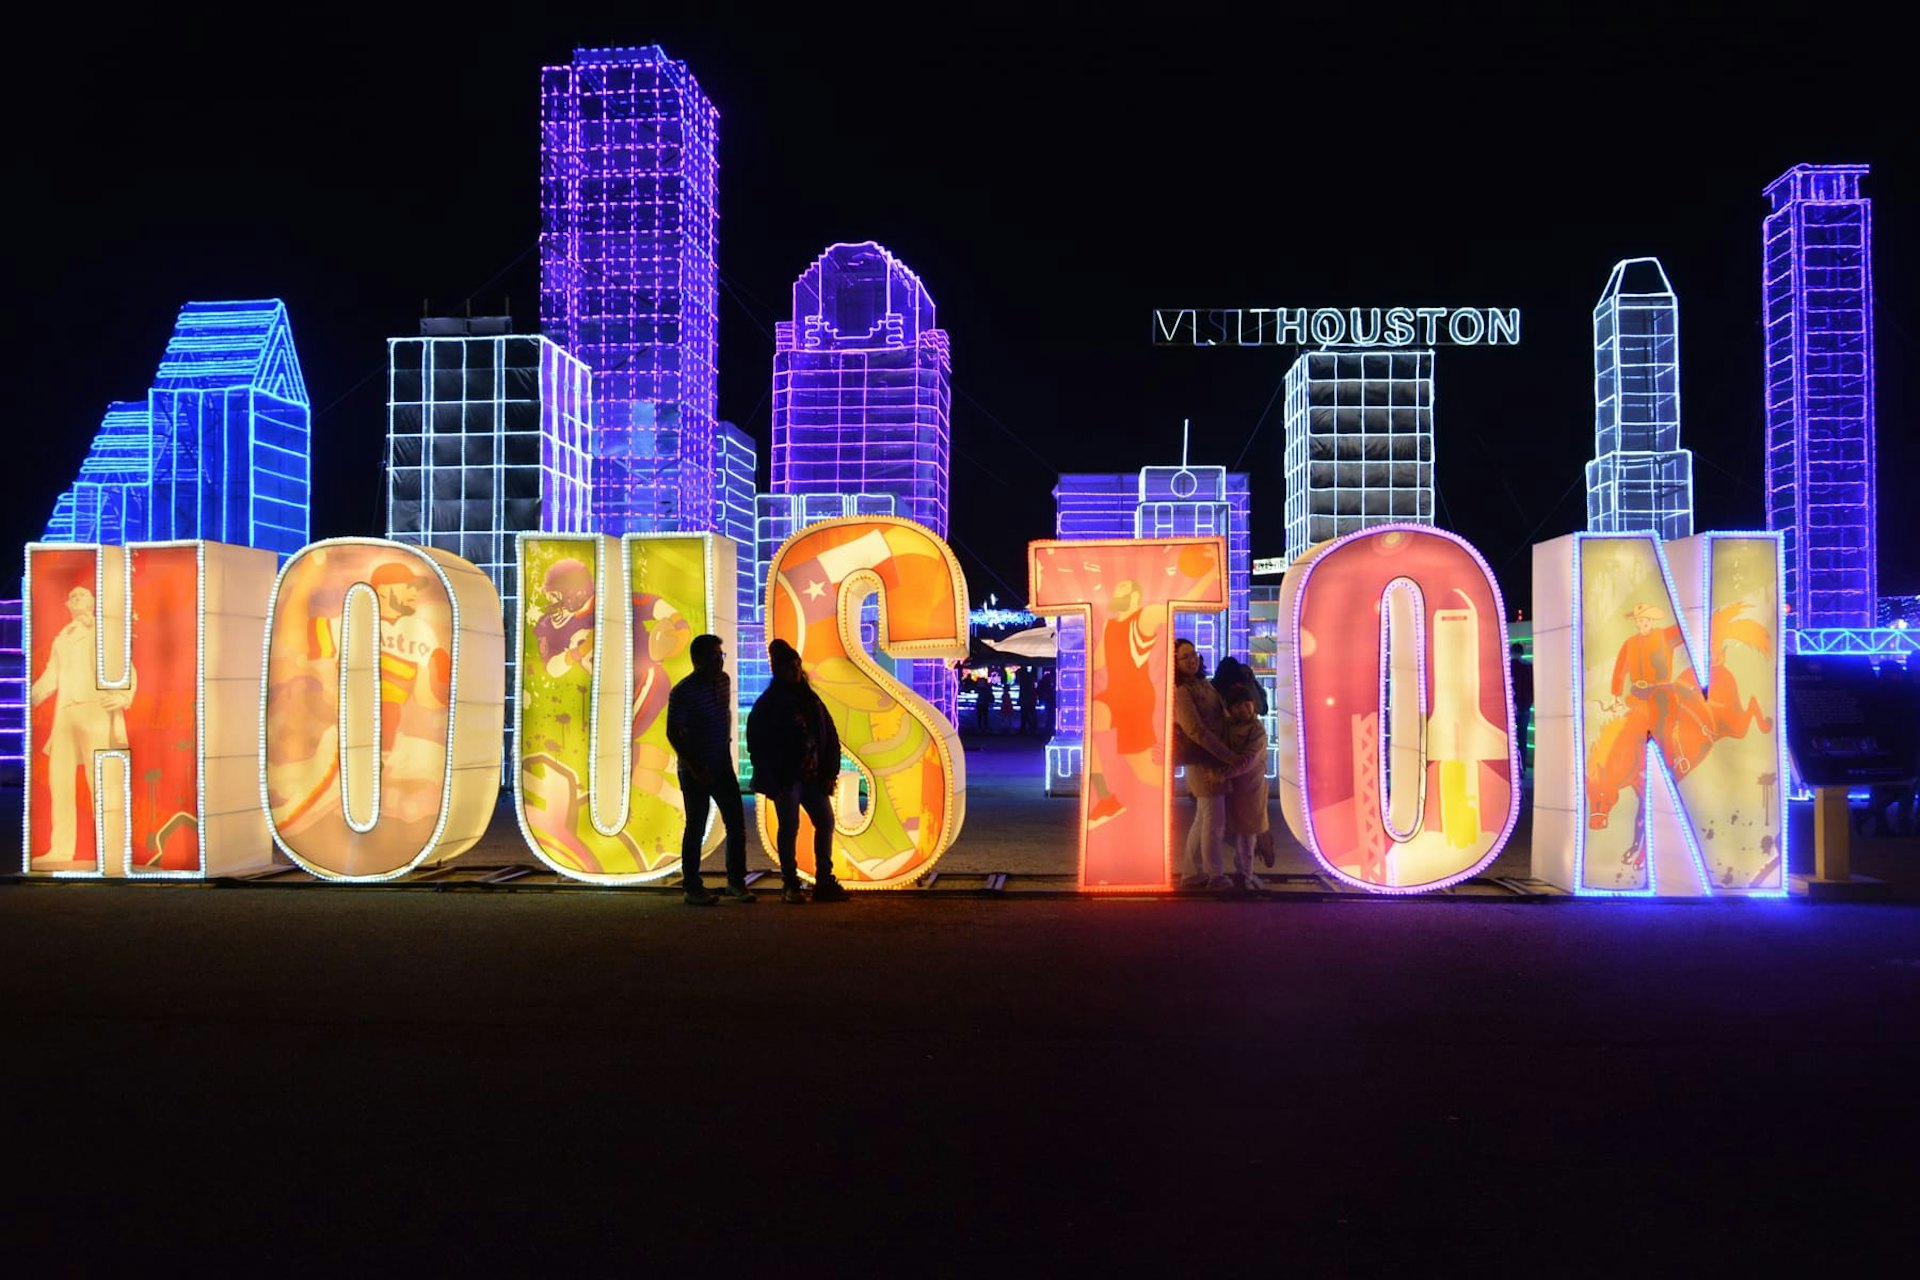 Light up Houston sculpture in Houston, Texas